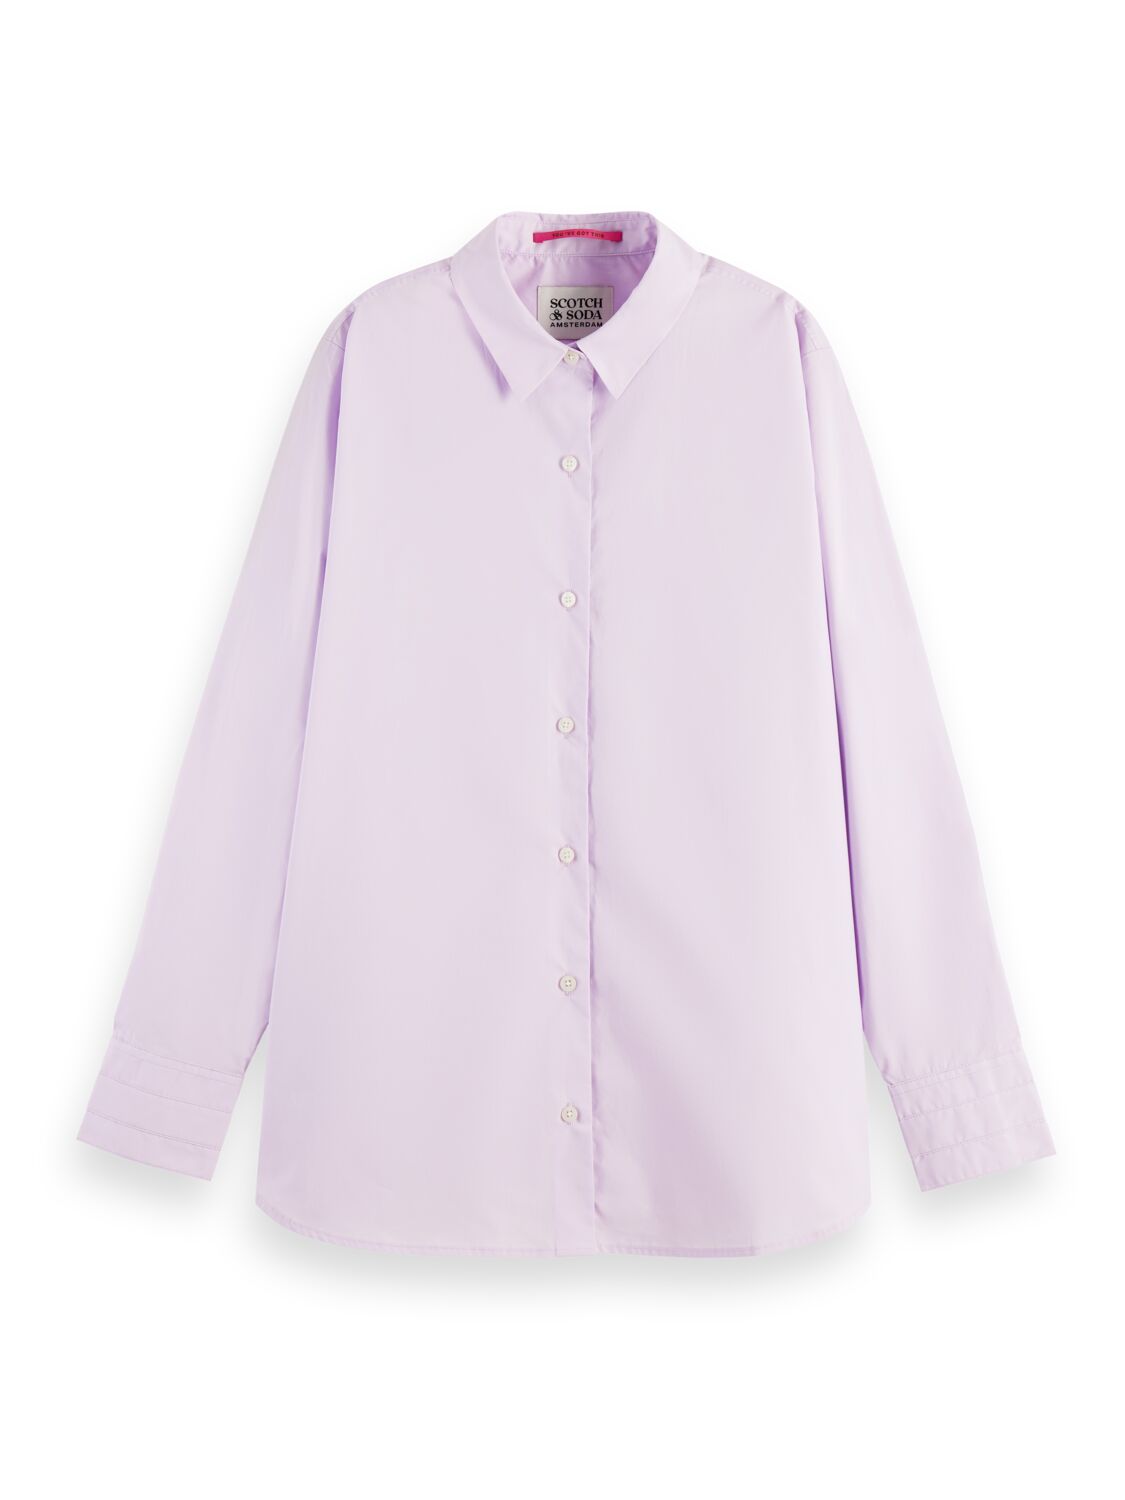 Рубашка женская Scotch & Soda 167826/1179 фиолетовая L